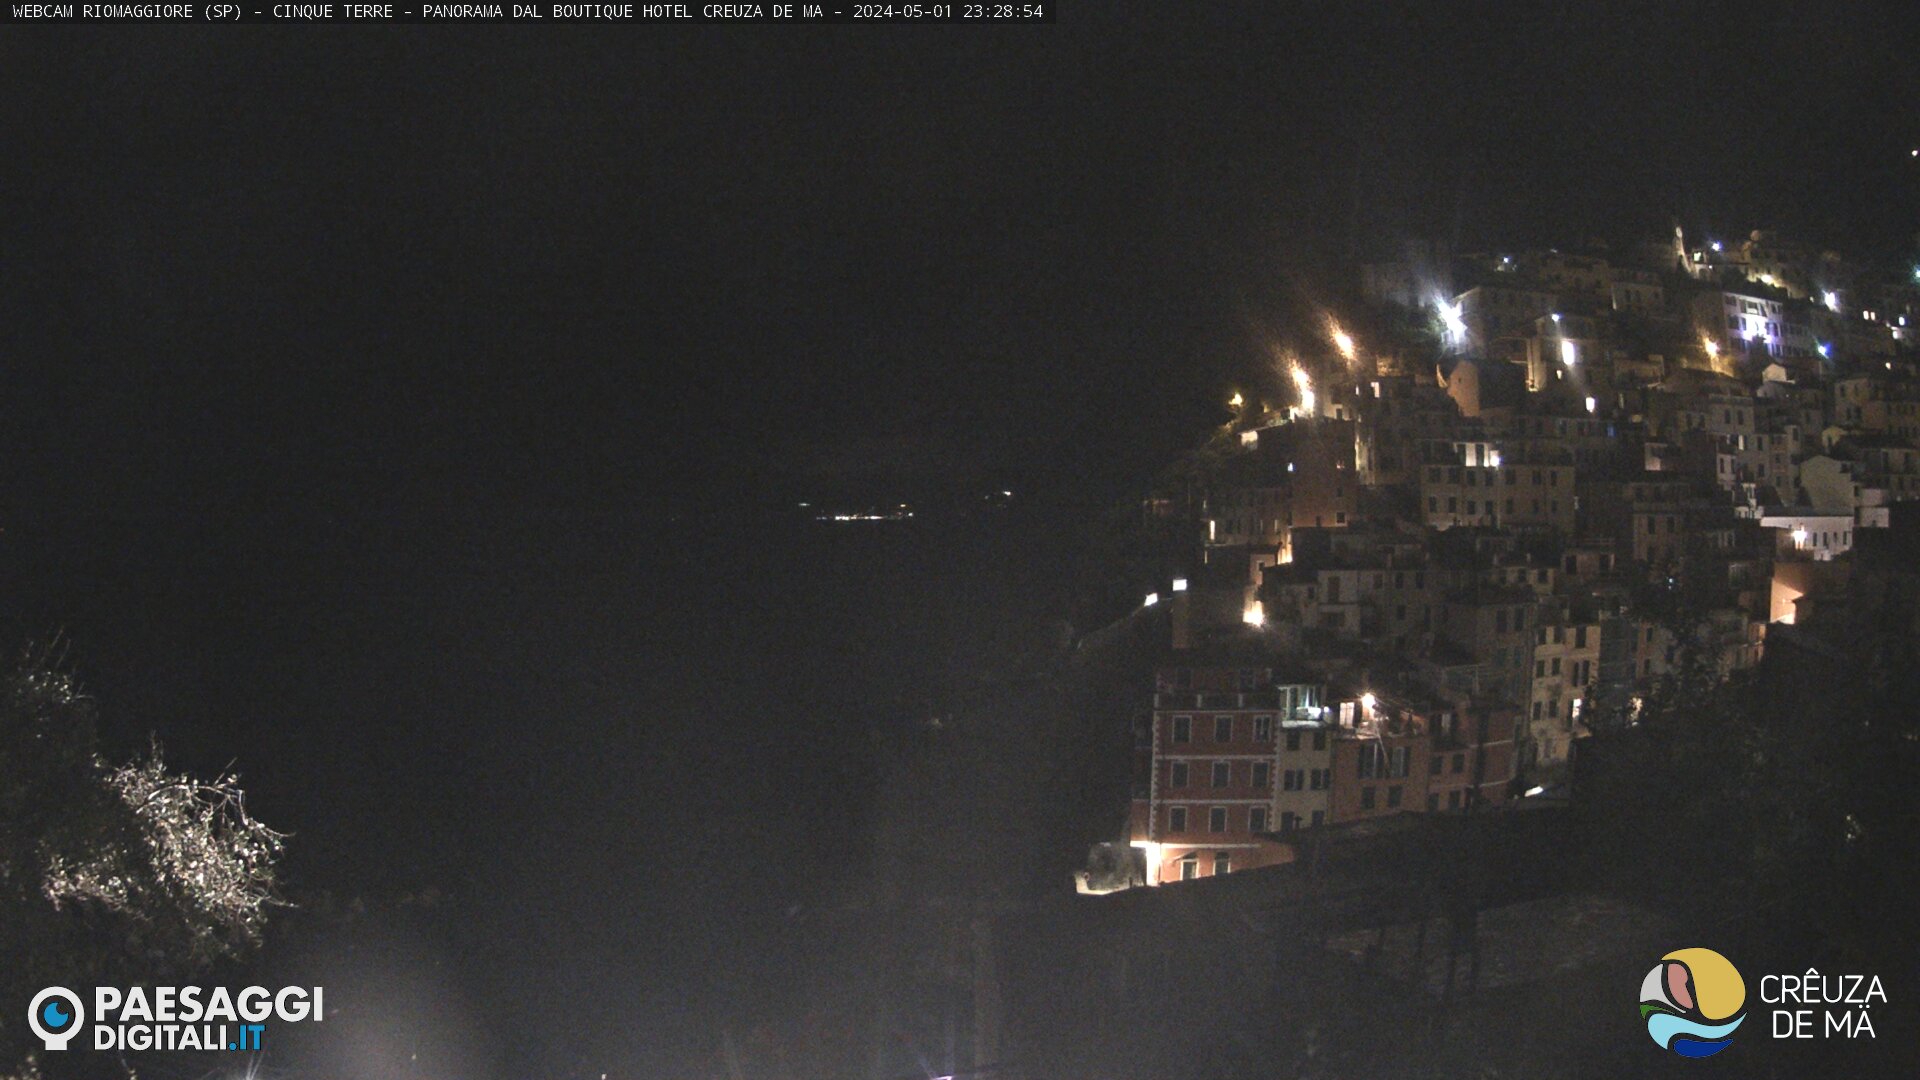 Riomaggiore (Cinque Terre) Sun. 23:31